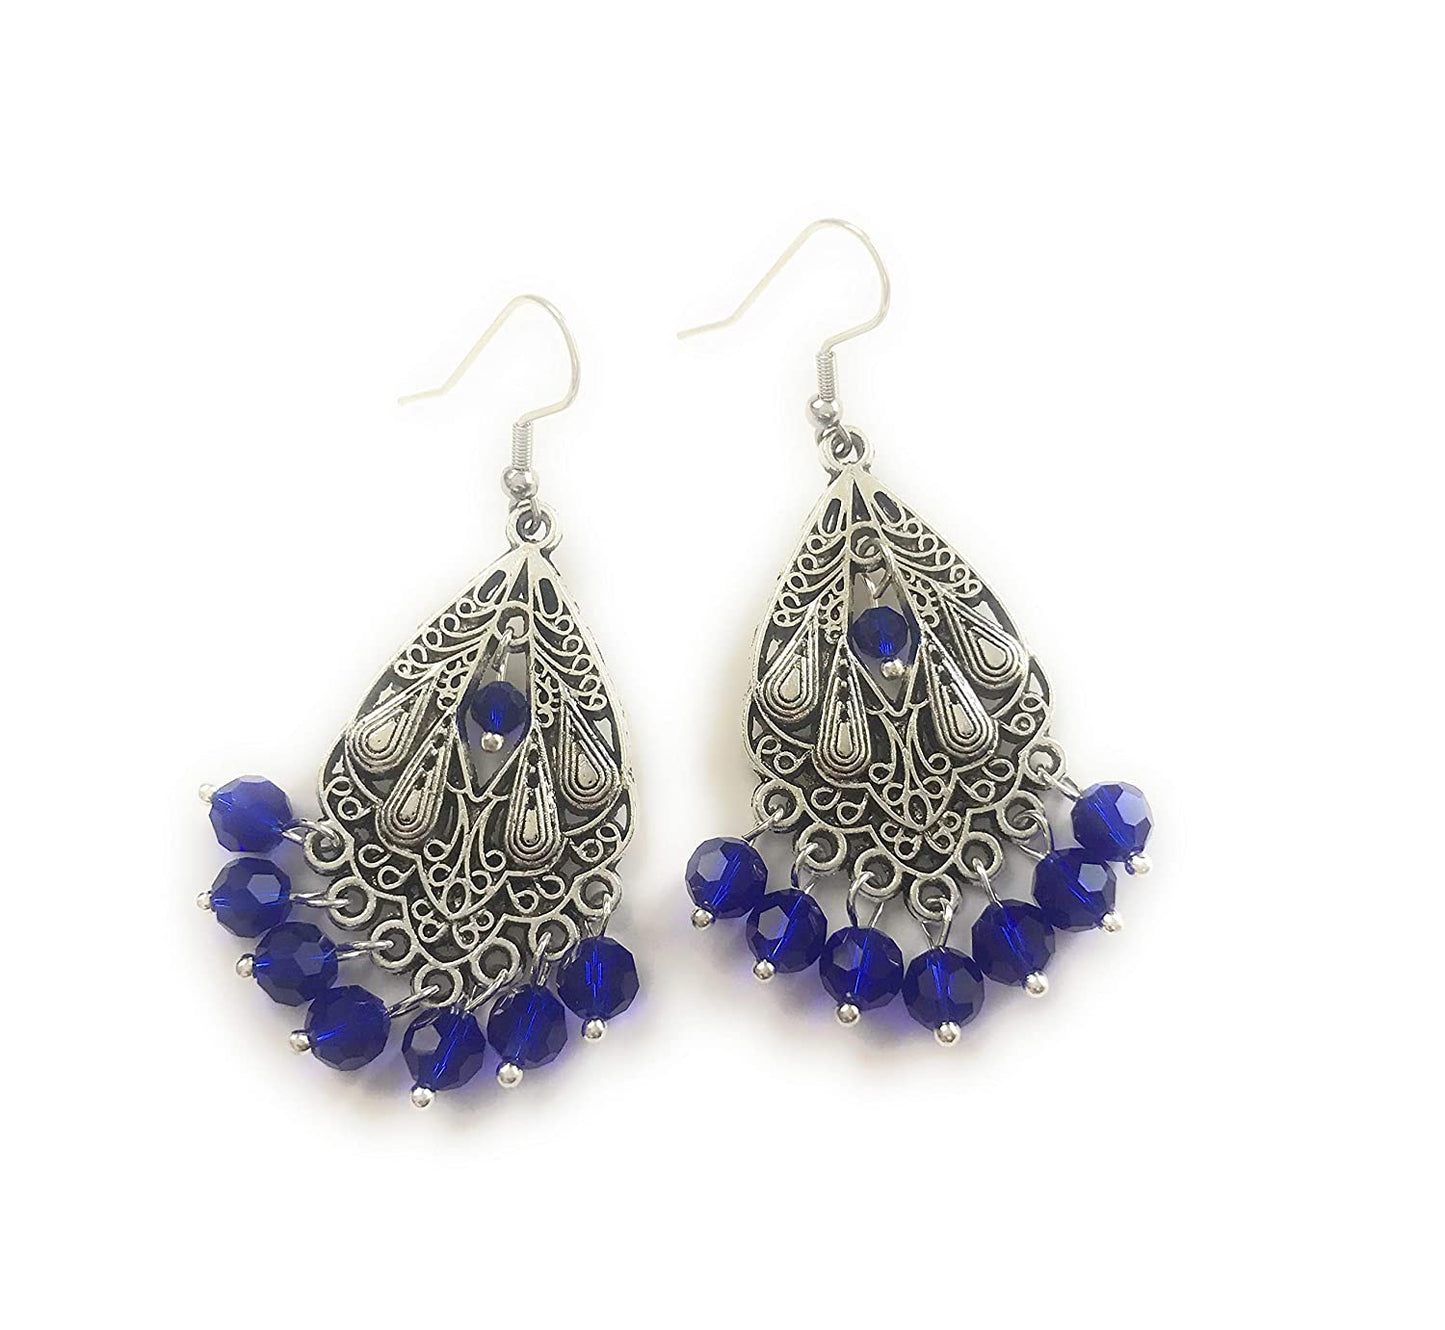 Cobalt Blue Beaded Chandelier Earrings Side by Side View from Scott D Jewelry Designs